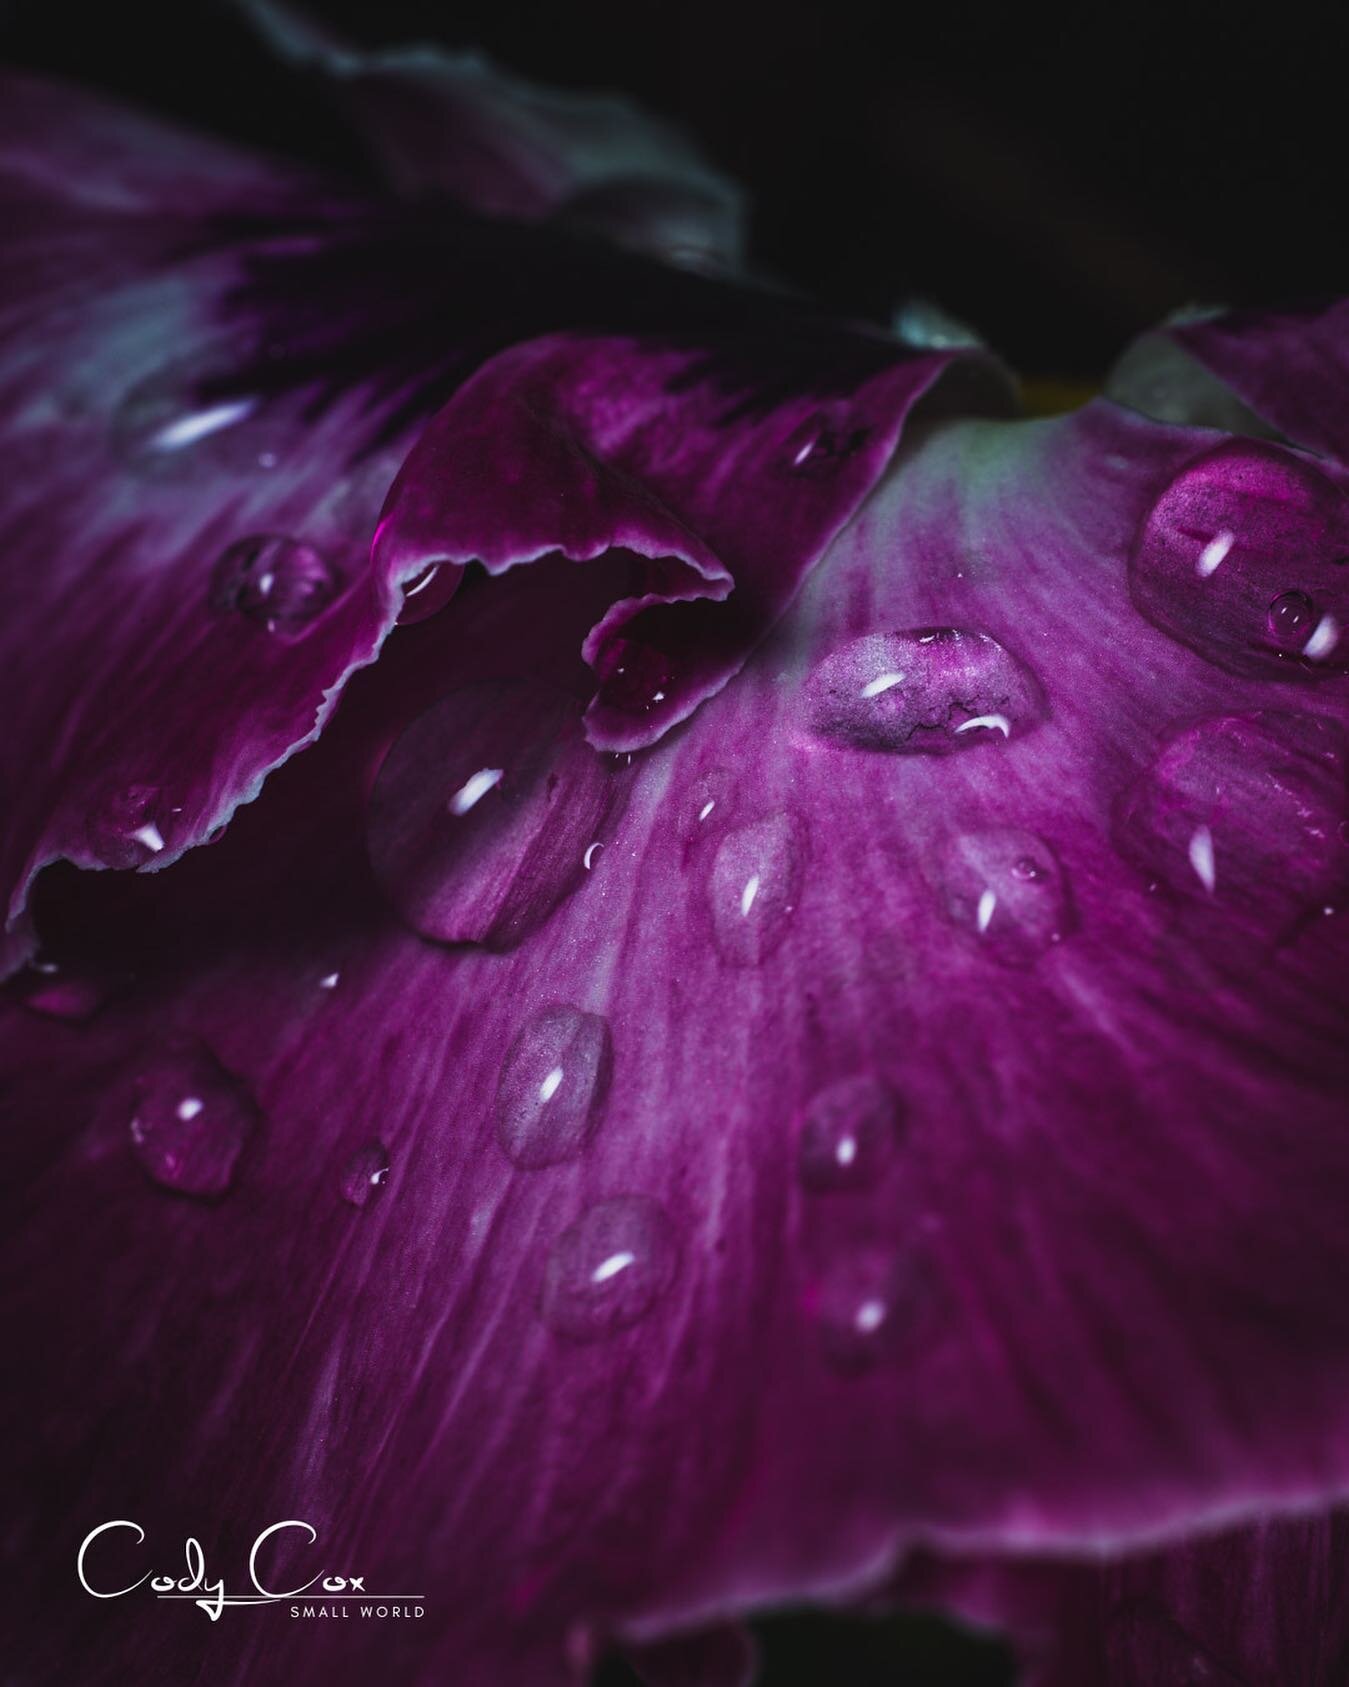 Small World - October 5
.
Morning dewdrops make everyone feel a little better. 🥰
.
#smallworld #dewdrops #macroart #flowerdewdrops #rogersar #flowerartography #nwarkansas #purpleflowers #macro_love